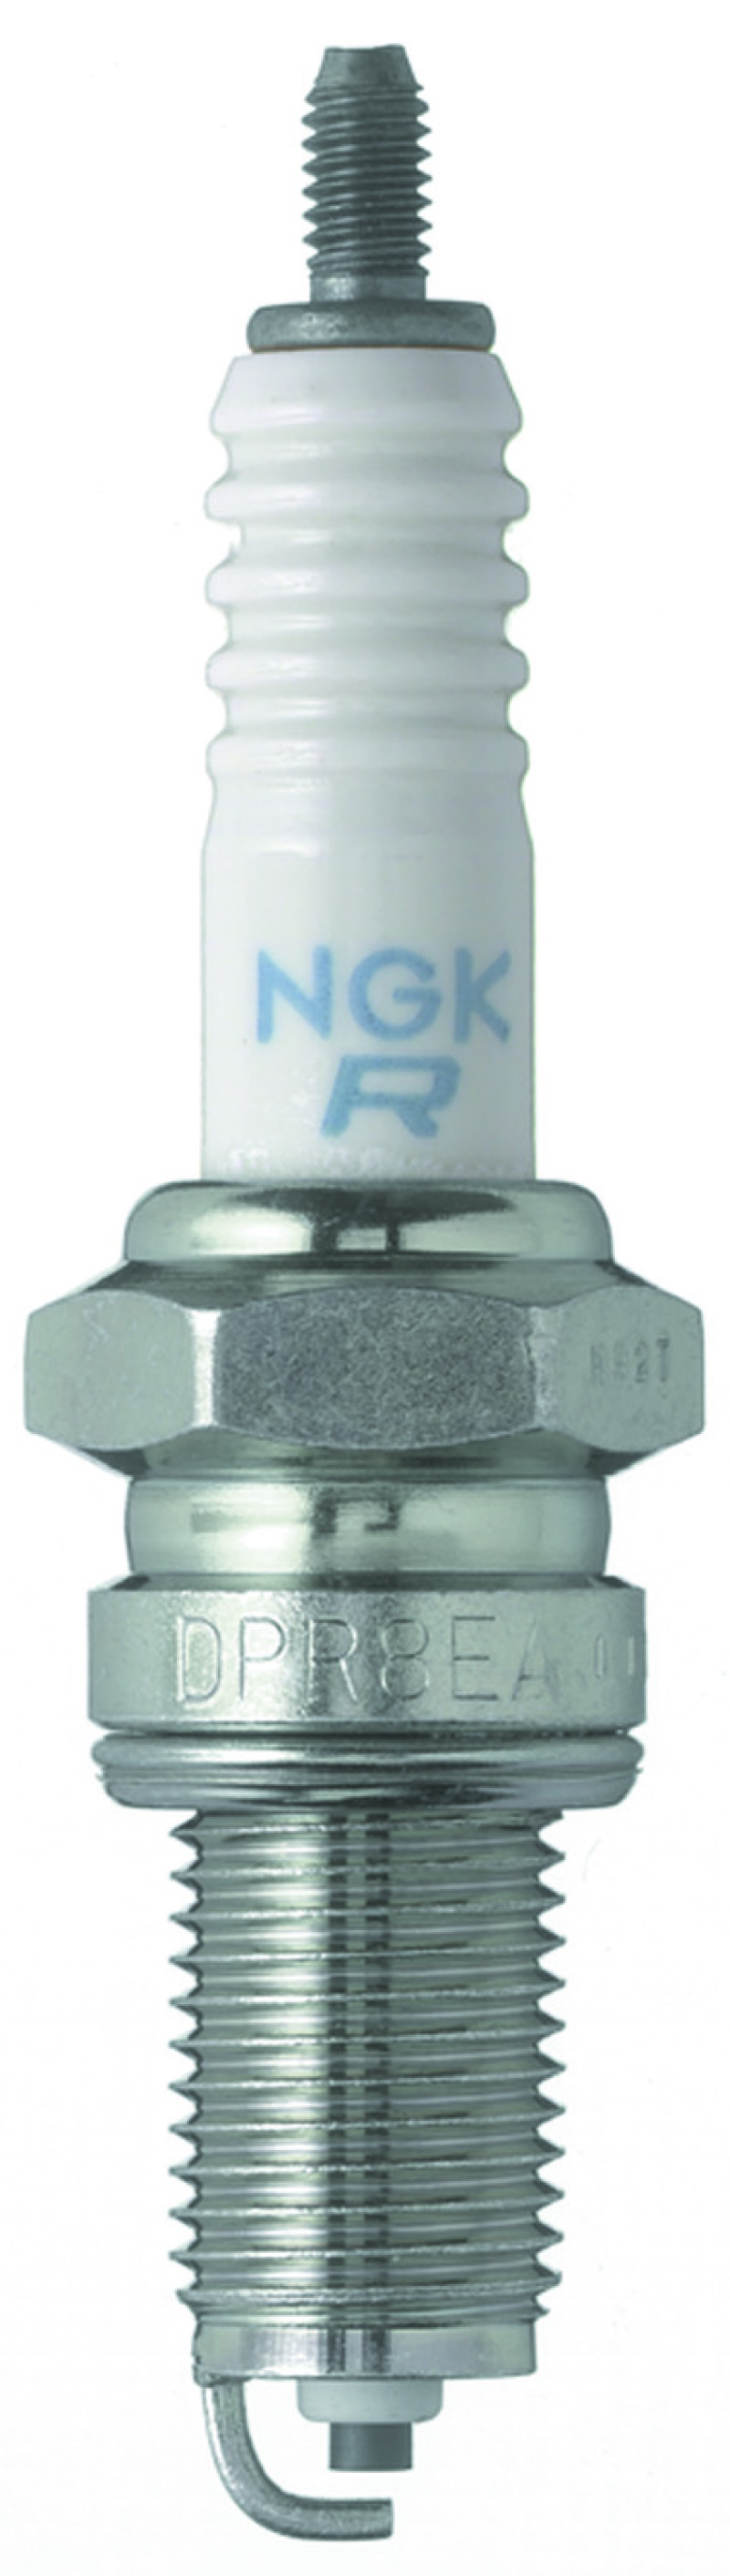 NGK Standard Spark Plug Box of 10 (DPR7EA-9) - 5129